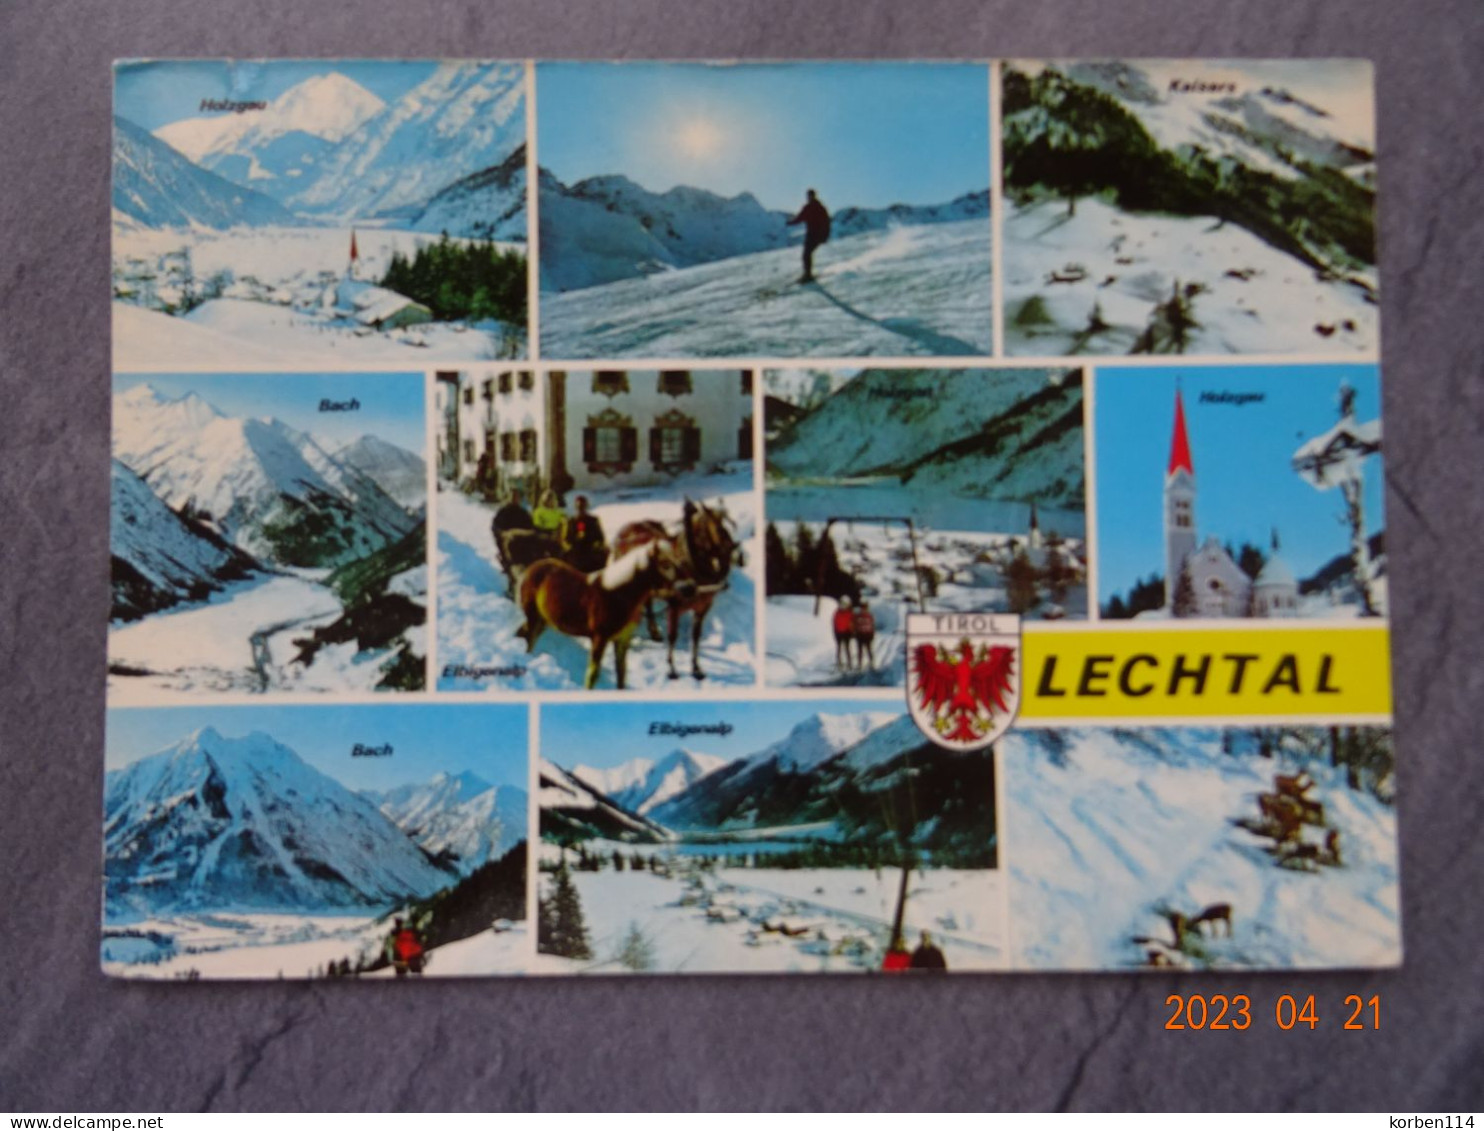 LECHTAL - Lechtal